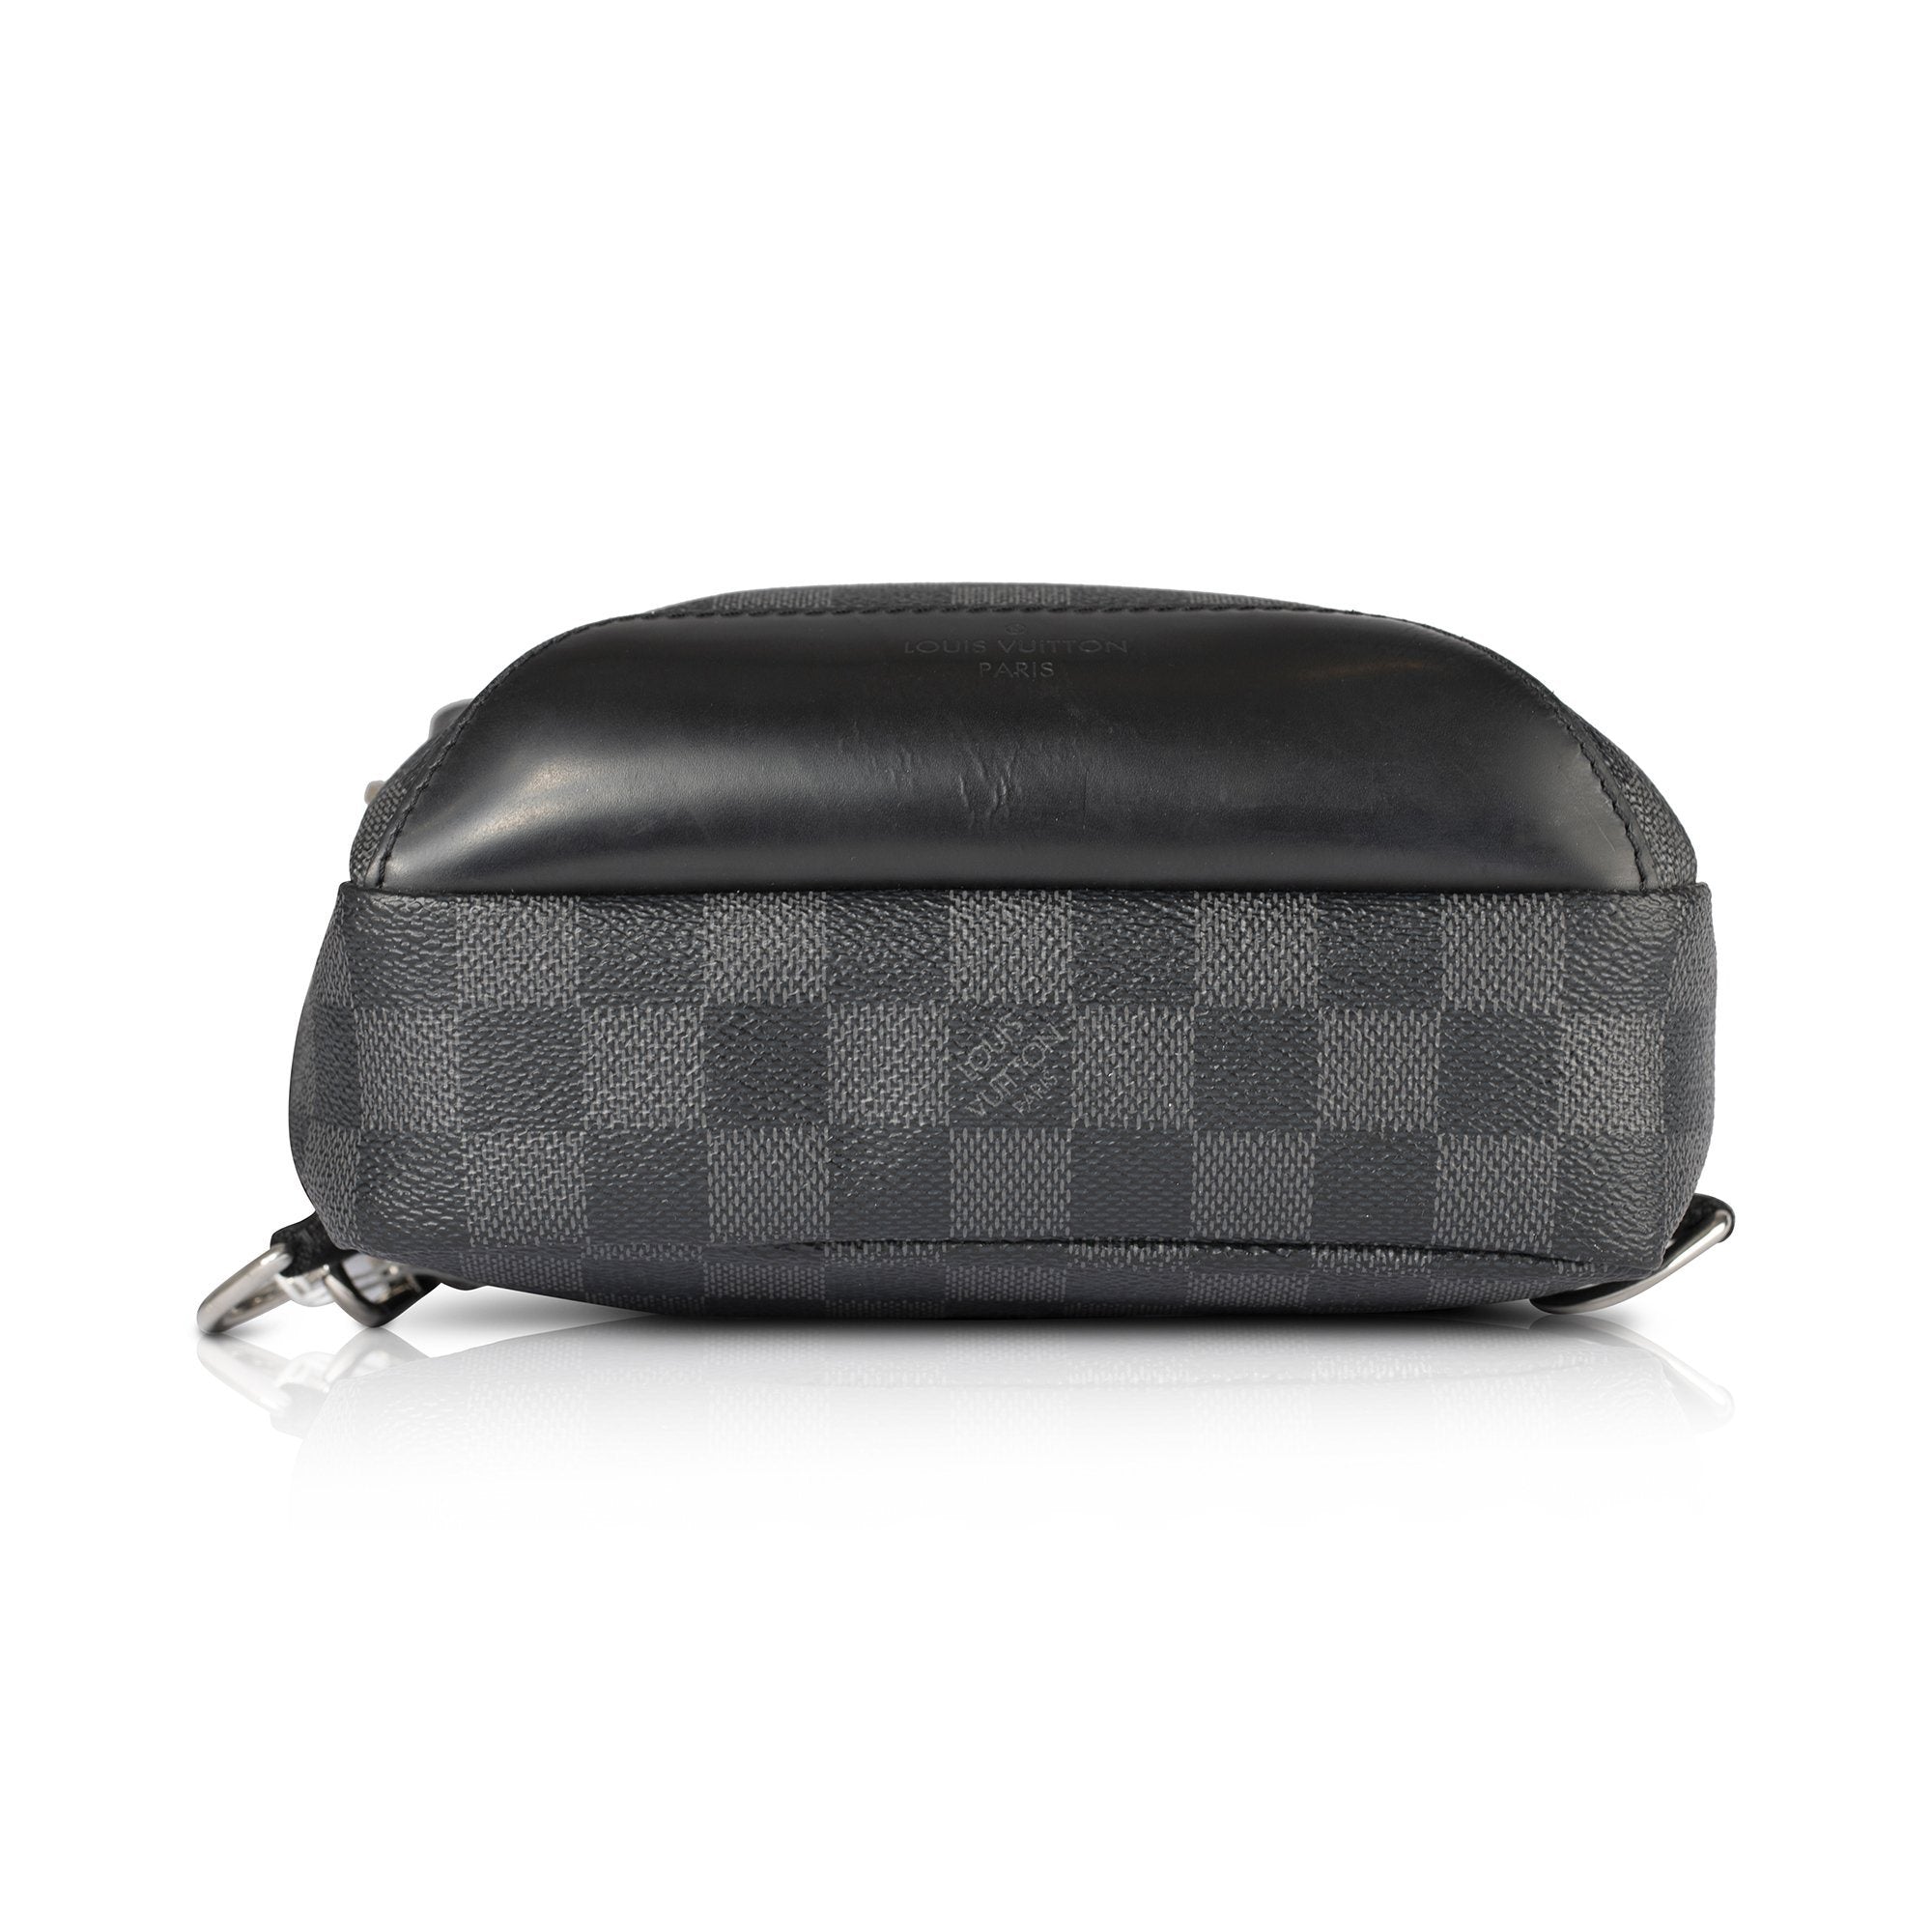 LOUIS VUITTON Avenue Sling Bag. #louisvuitton #bags #leather